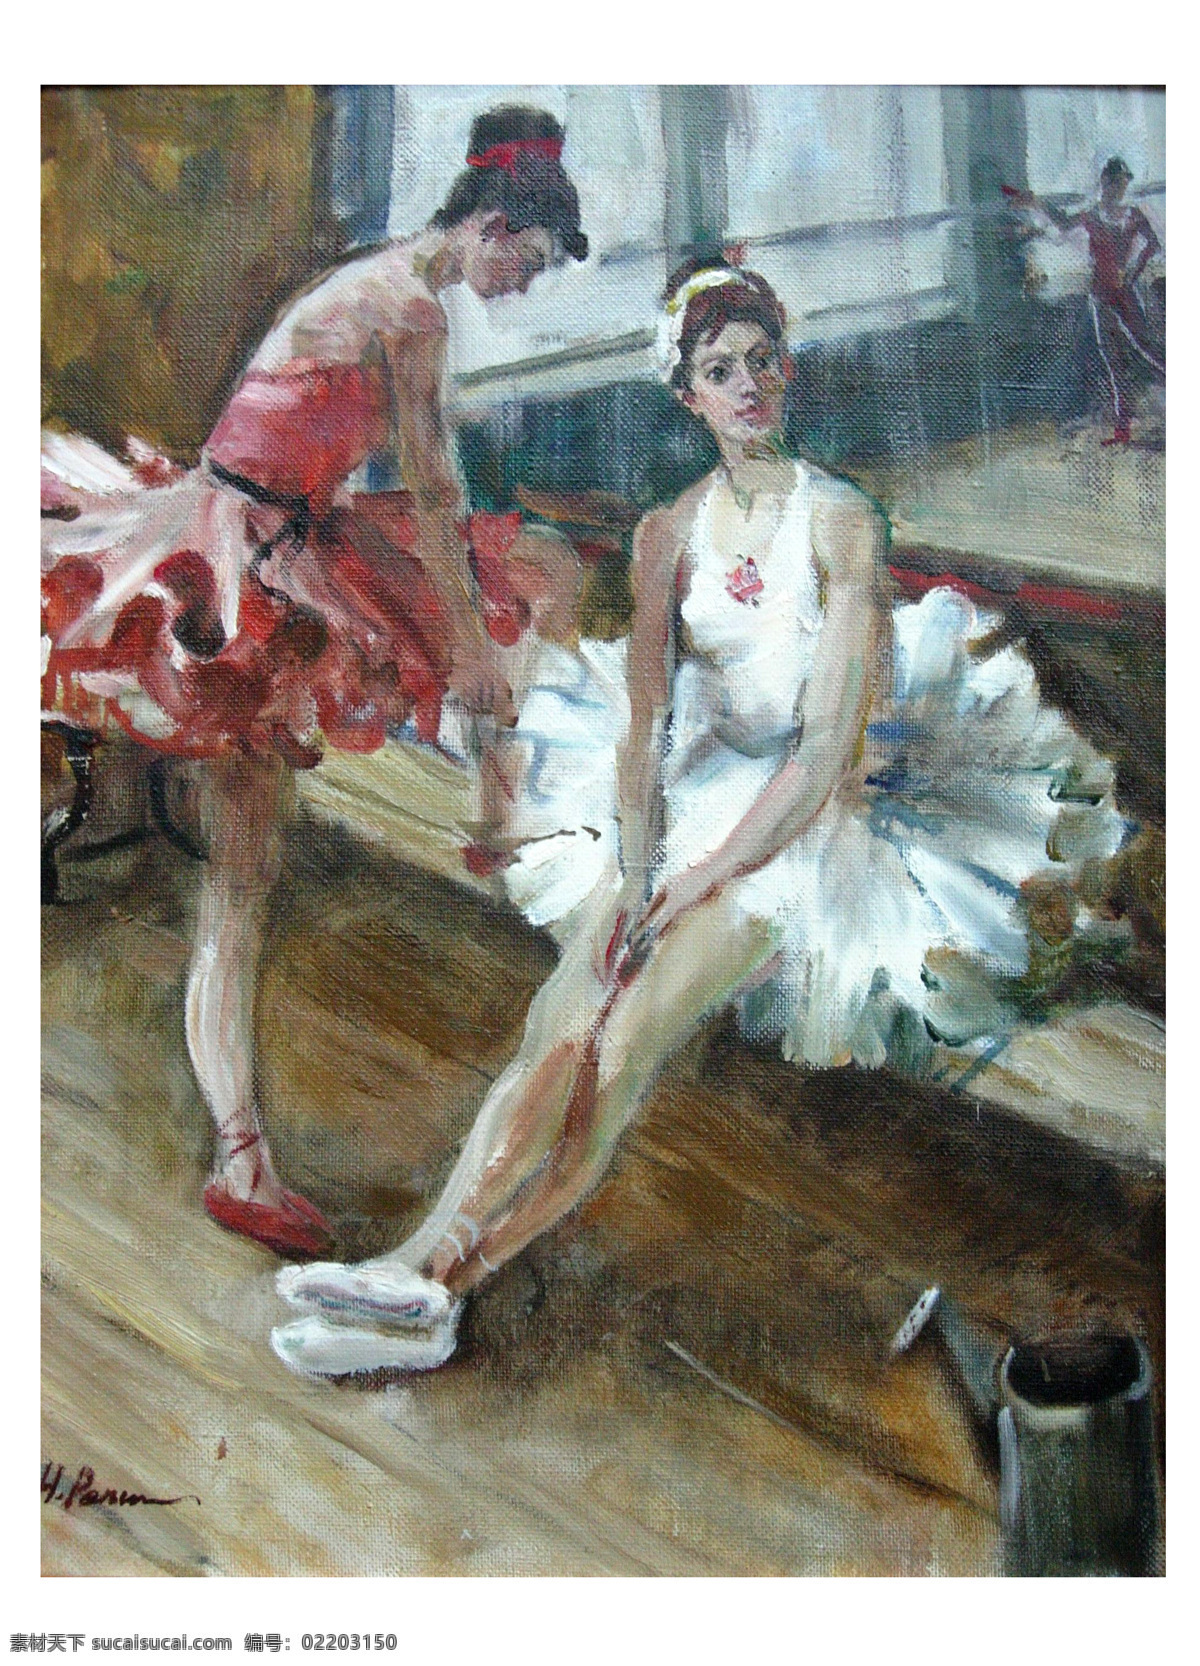 芭蕾舞 窗台 地板 俄罗斯 绘画书法 美术 女人 裙子 美术作品 油画 人物 芭蕾 舞女 设计素材 模板下载 舞蹈 舞鞋 艺术 美术作品集 文化艺术 家居装饰素材